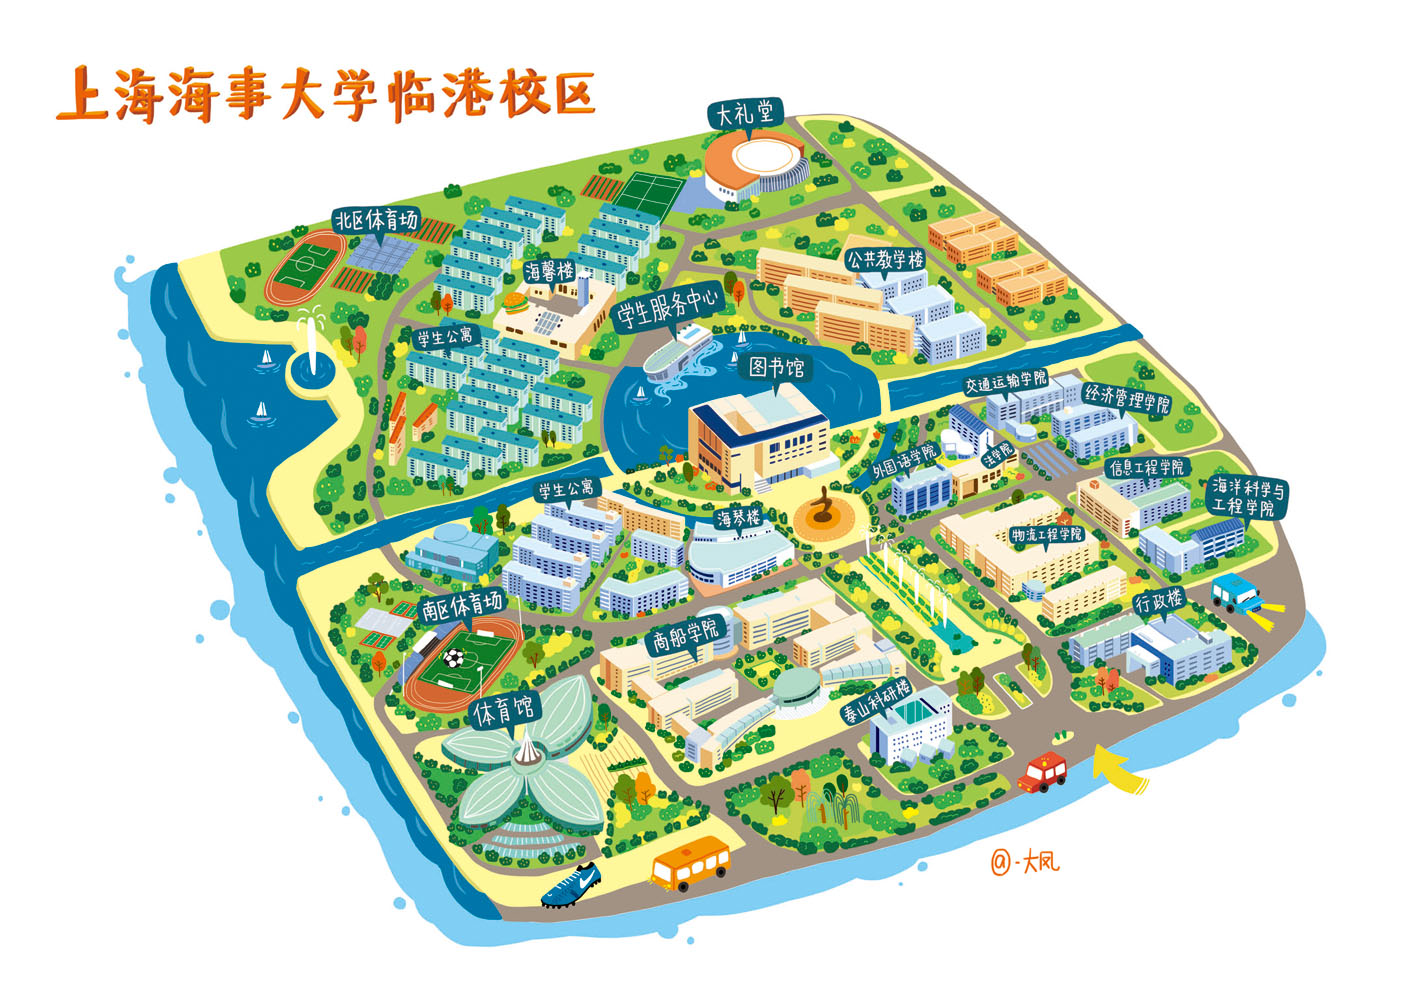 绘制的上海高校手绘地图 分别是上海财经大学和上海海事大学临港校区图片